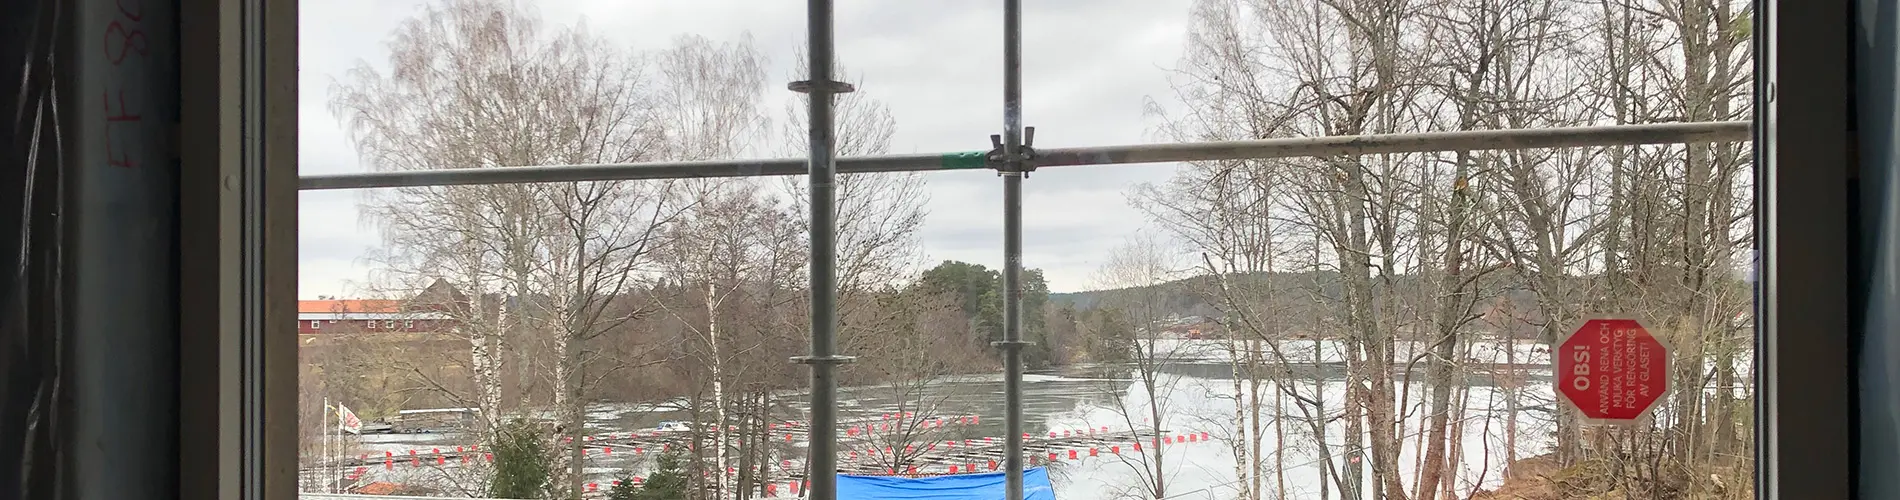 Utsikten från Rimforsa förskola.